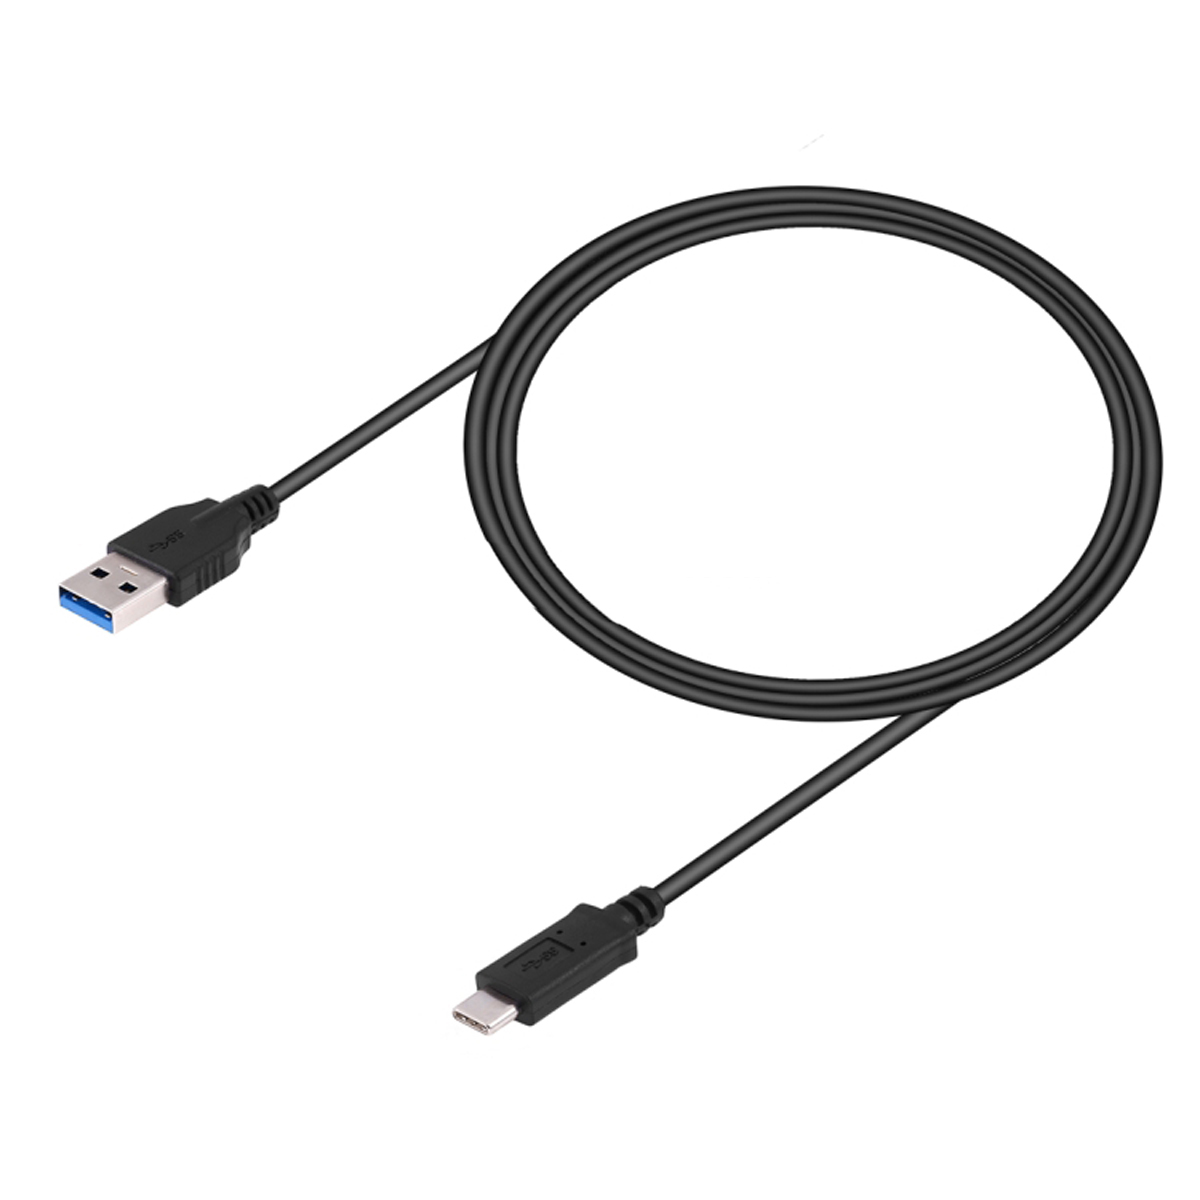 UC-312 USB 3.1 C/M - USB 3.0 A/M, černý, 3m, USB C-USB A kabel